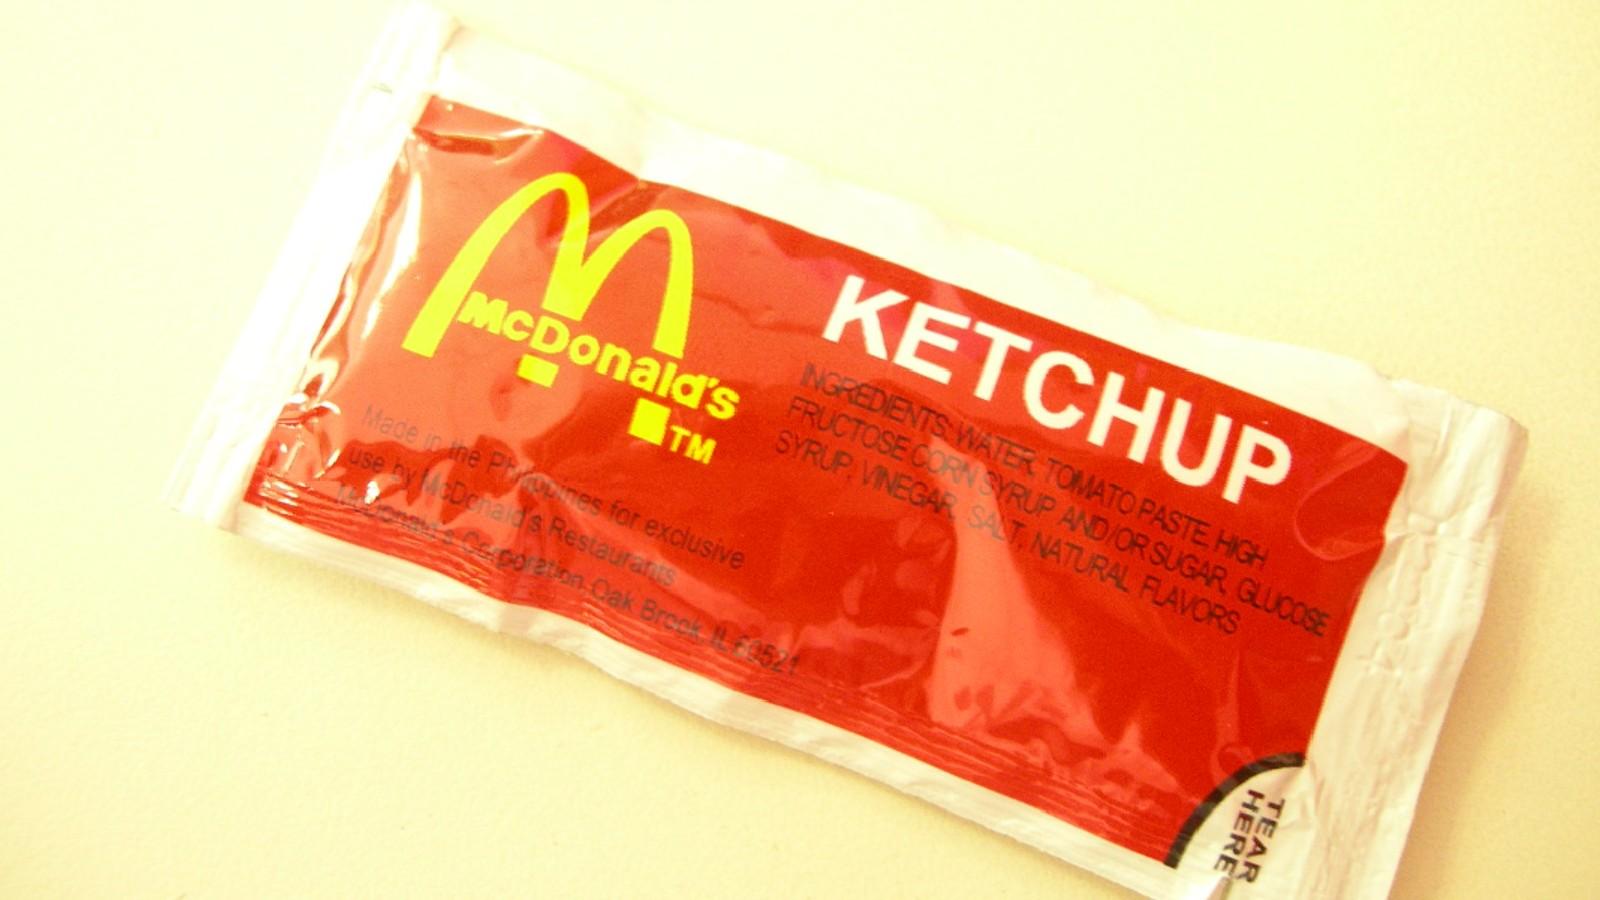 McDonald's ketchup